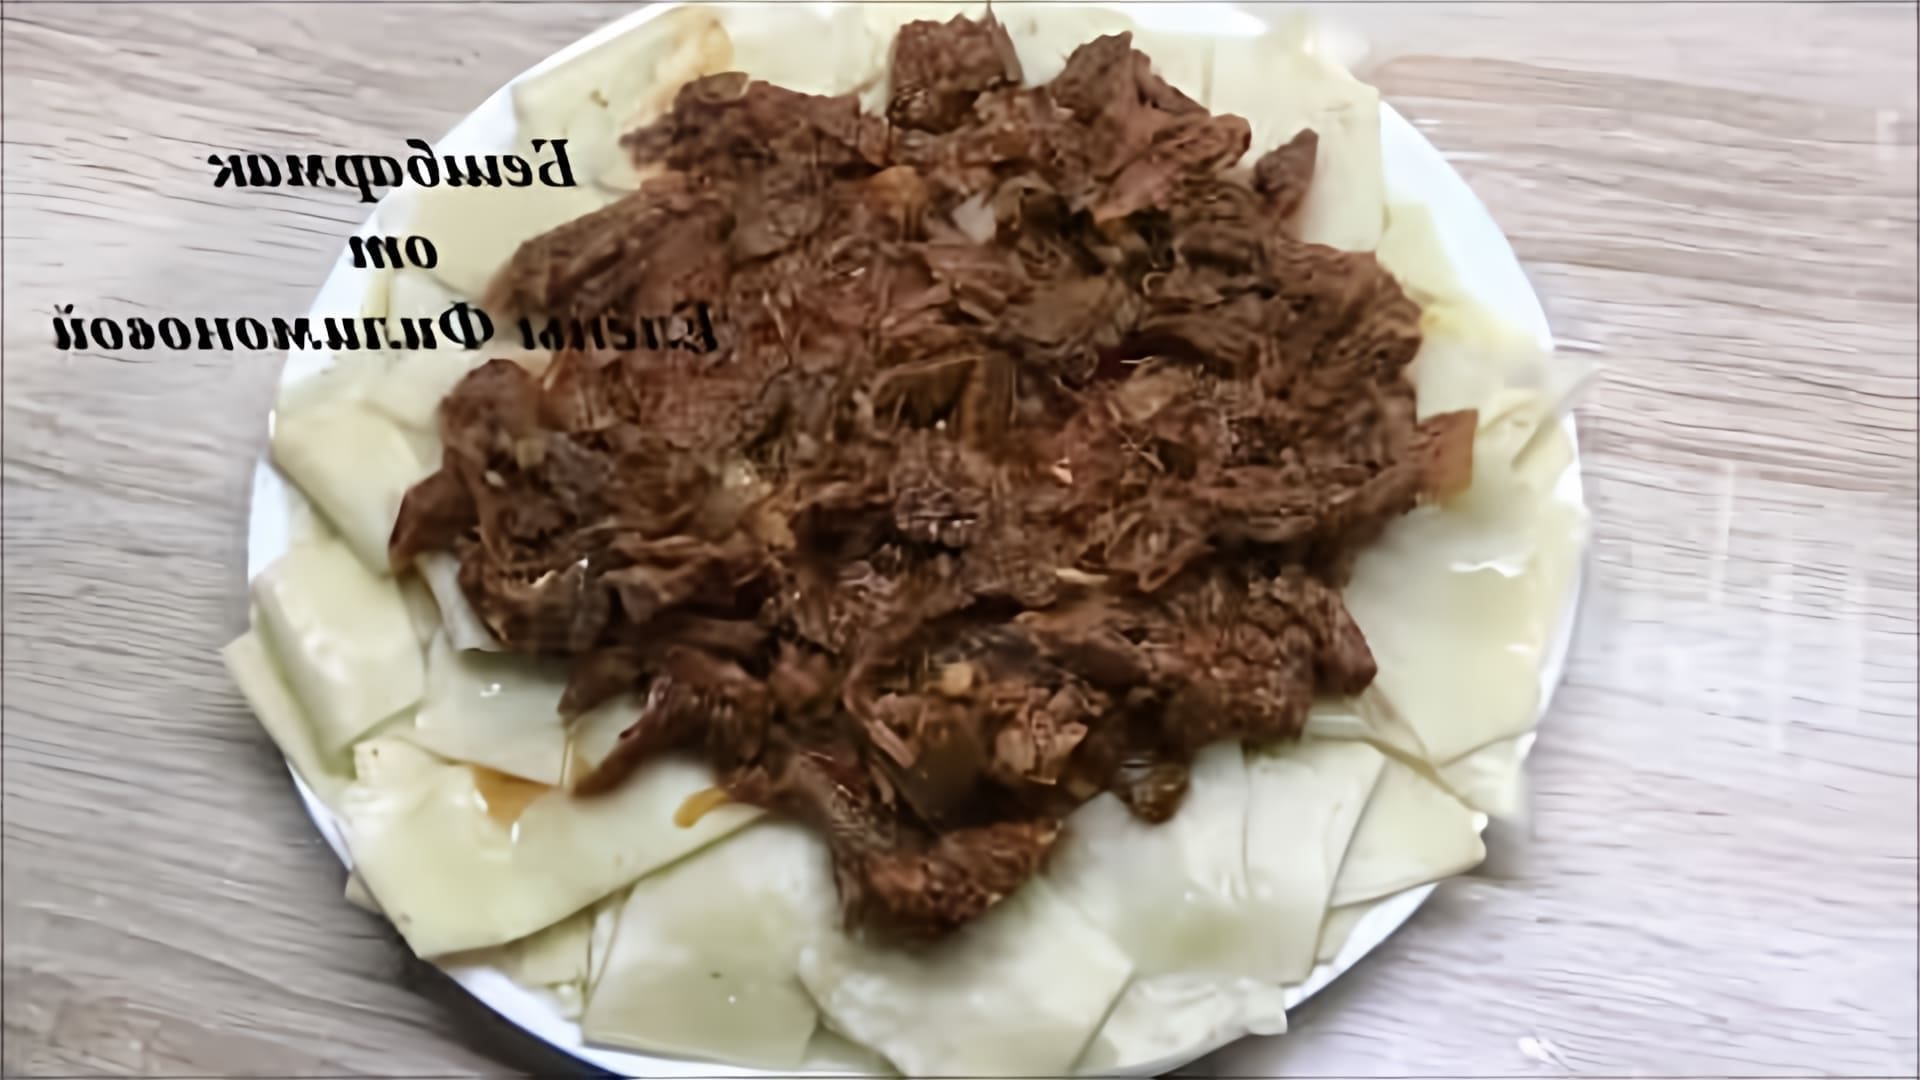 В этом видео демонстрируется рецепт приготовления бешбармака из говядины